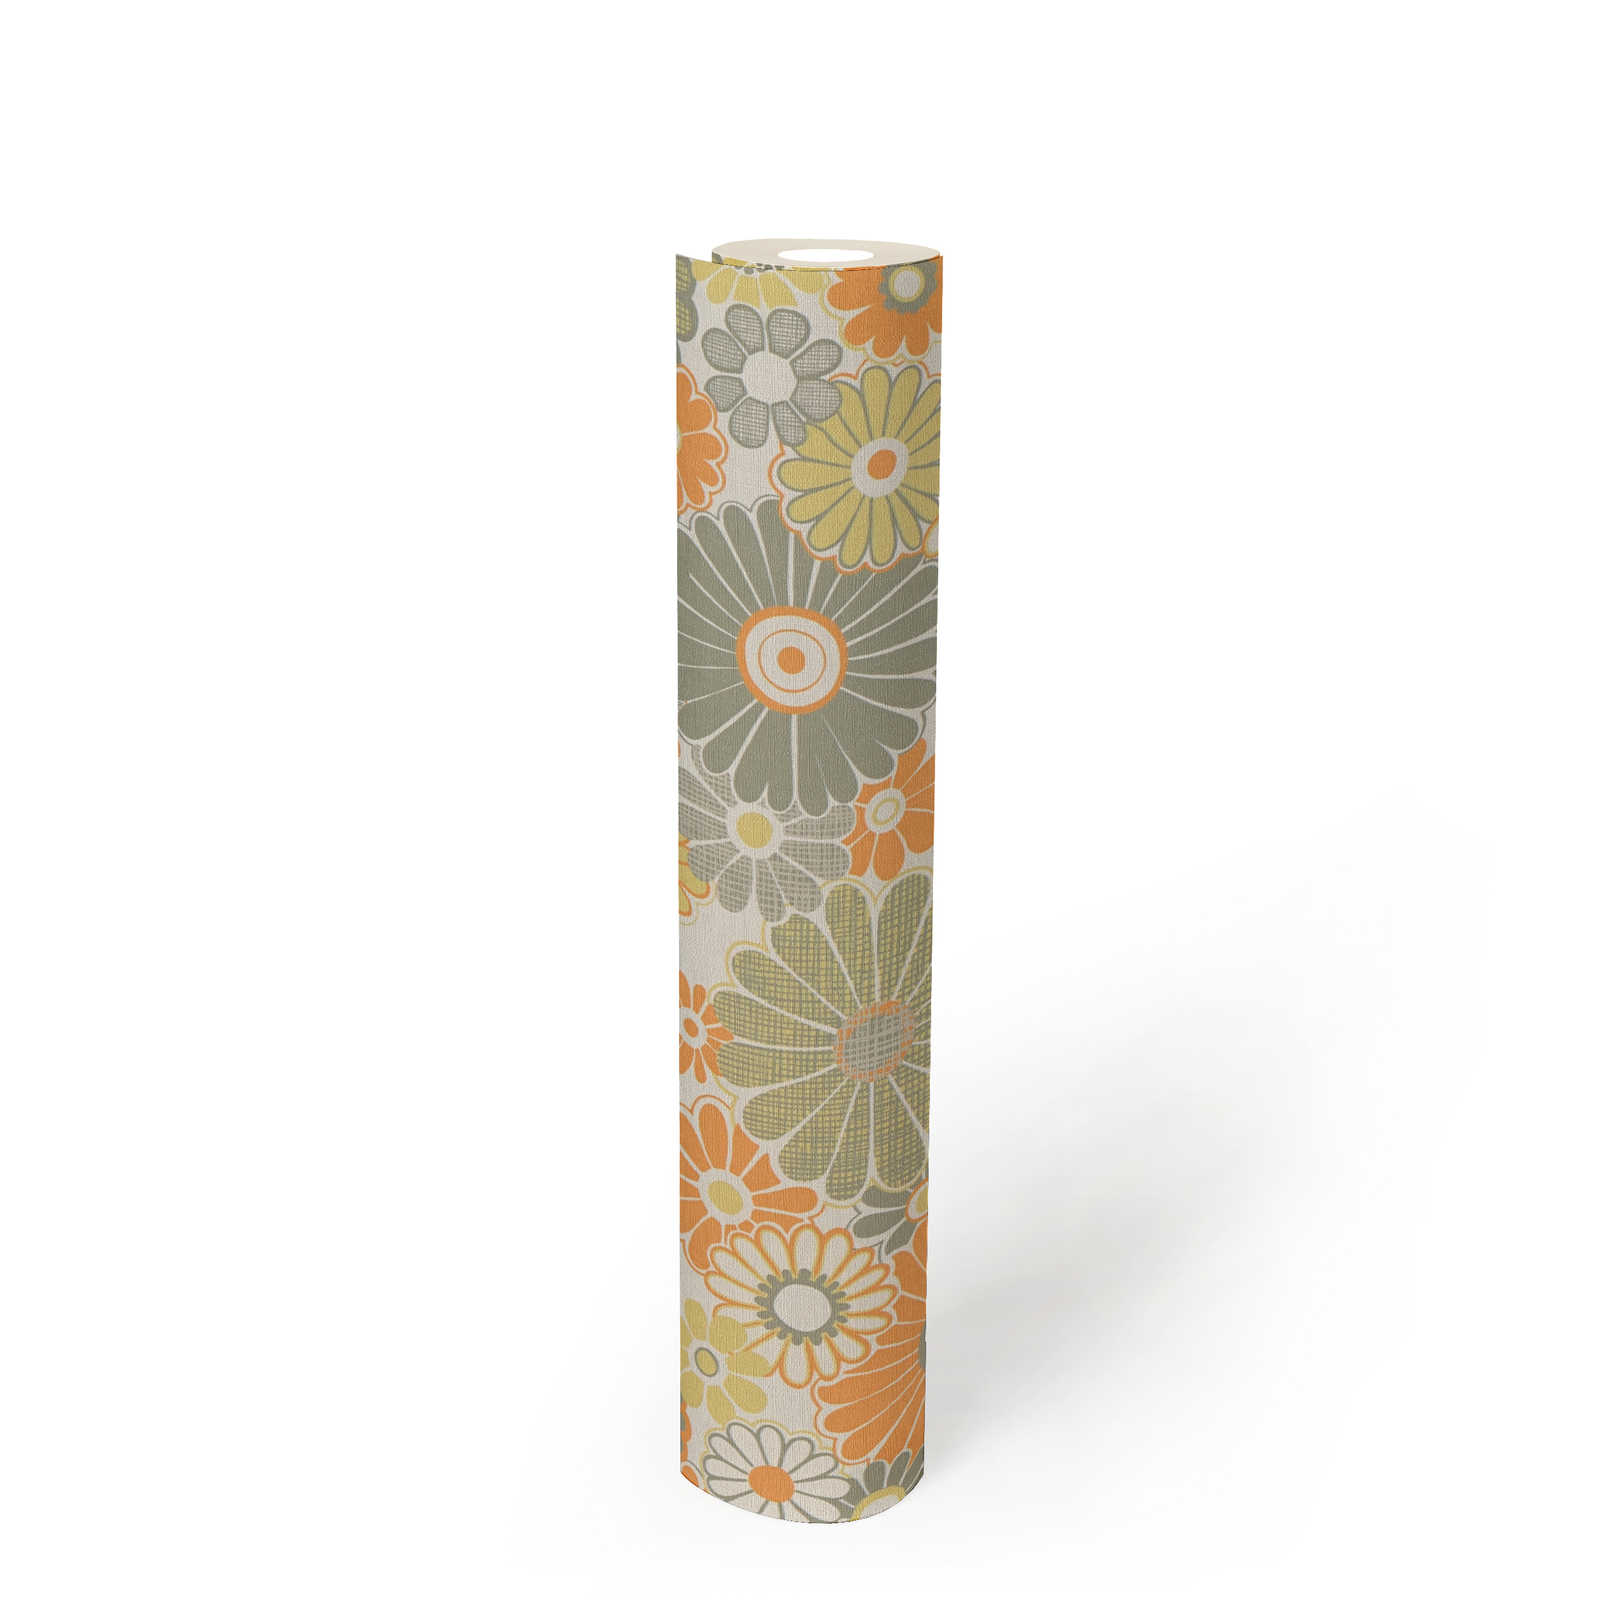             papier peint en papier fleuri légèrement structuré de style rétro - orange, vert, blanc
        